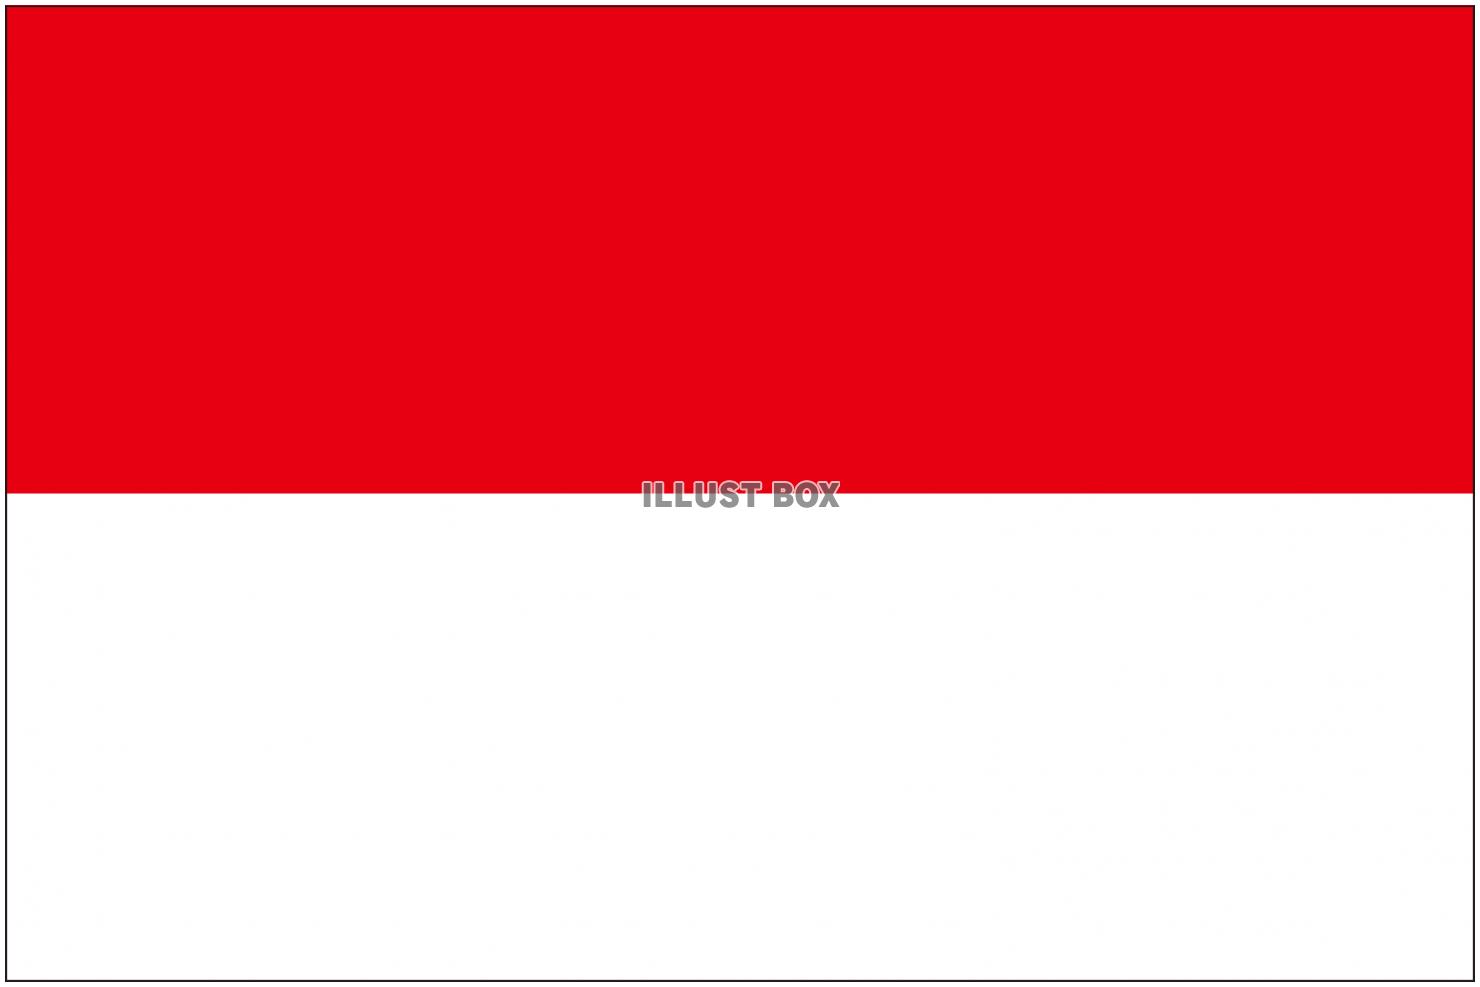 無料イラスト インドネシアの国旗